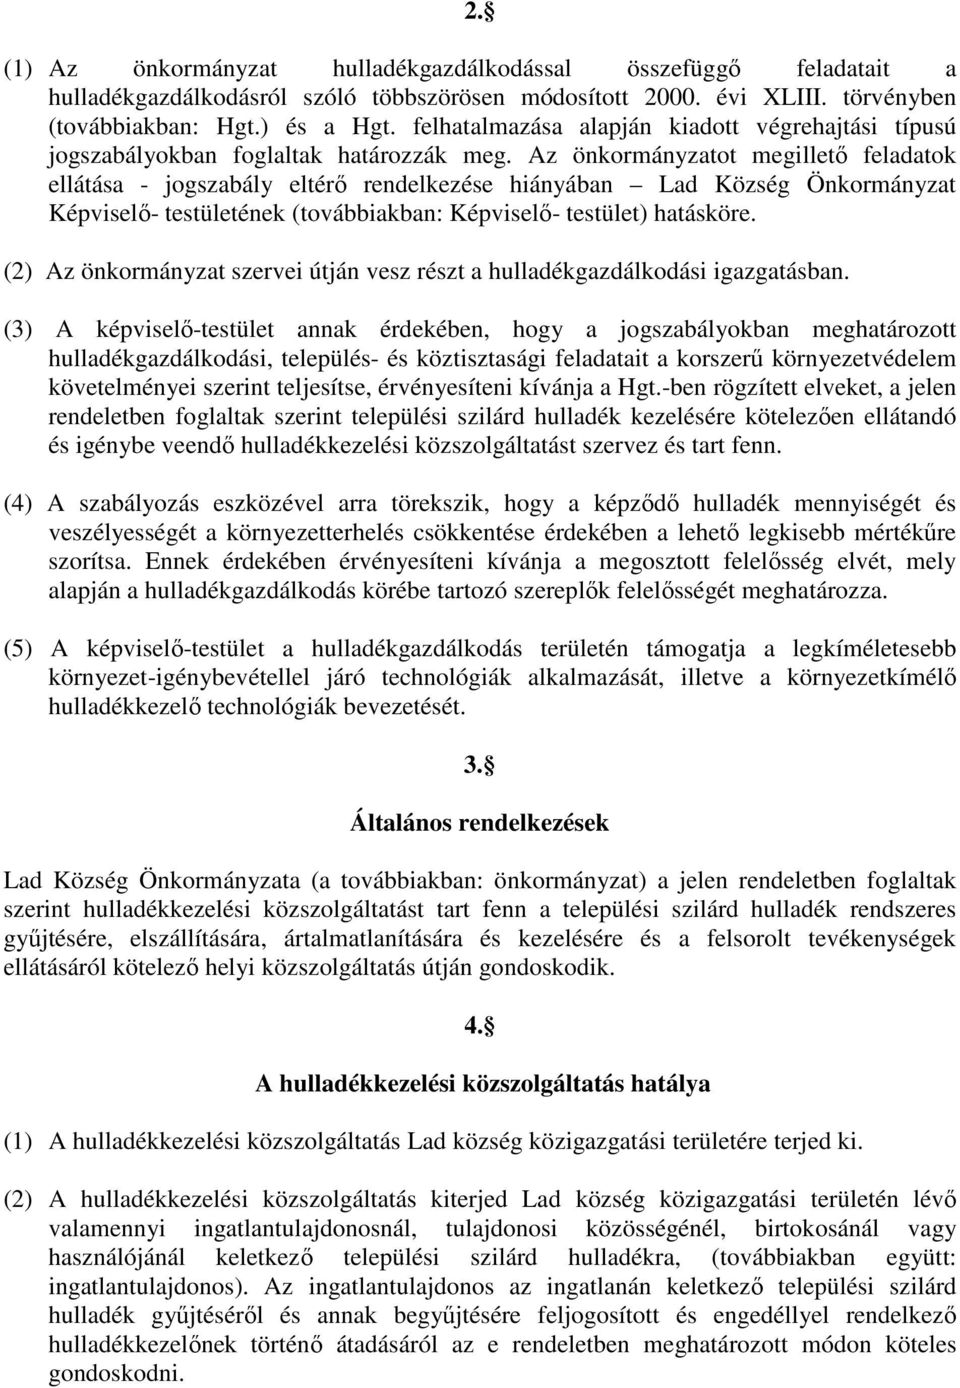 Az önkormányzatot megilletı feladatok ellátása - jogszabály eltérı rendelkezése hiányában Lad Község Önkormányzat Képviselı- testületének (továbbiakban: Képviselı- testület) hatásköre.